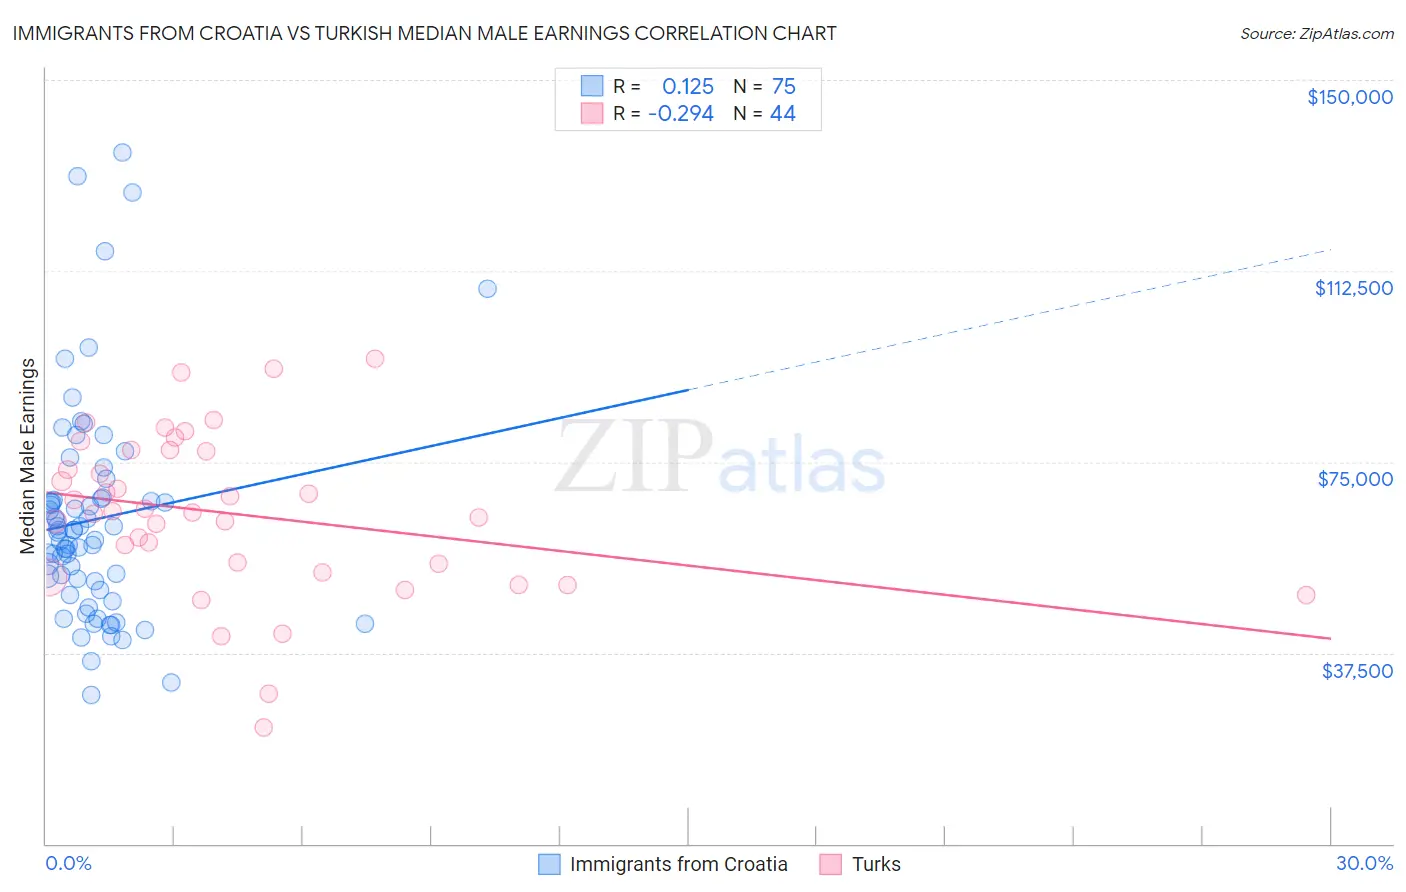 Immigrants from Croatia vs Turkish Median Male Earnings